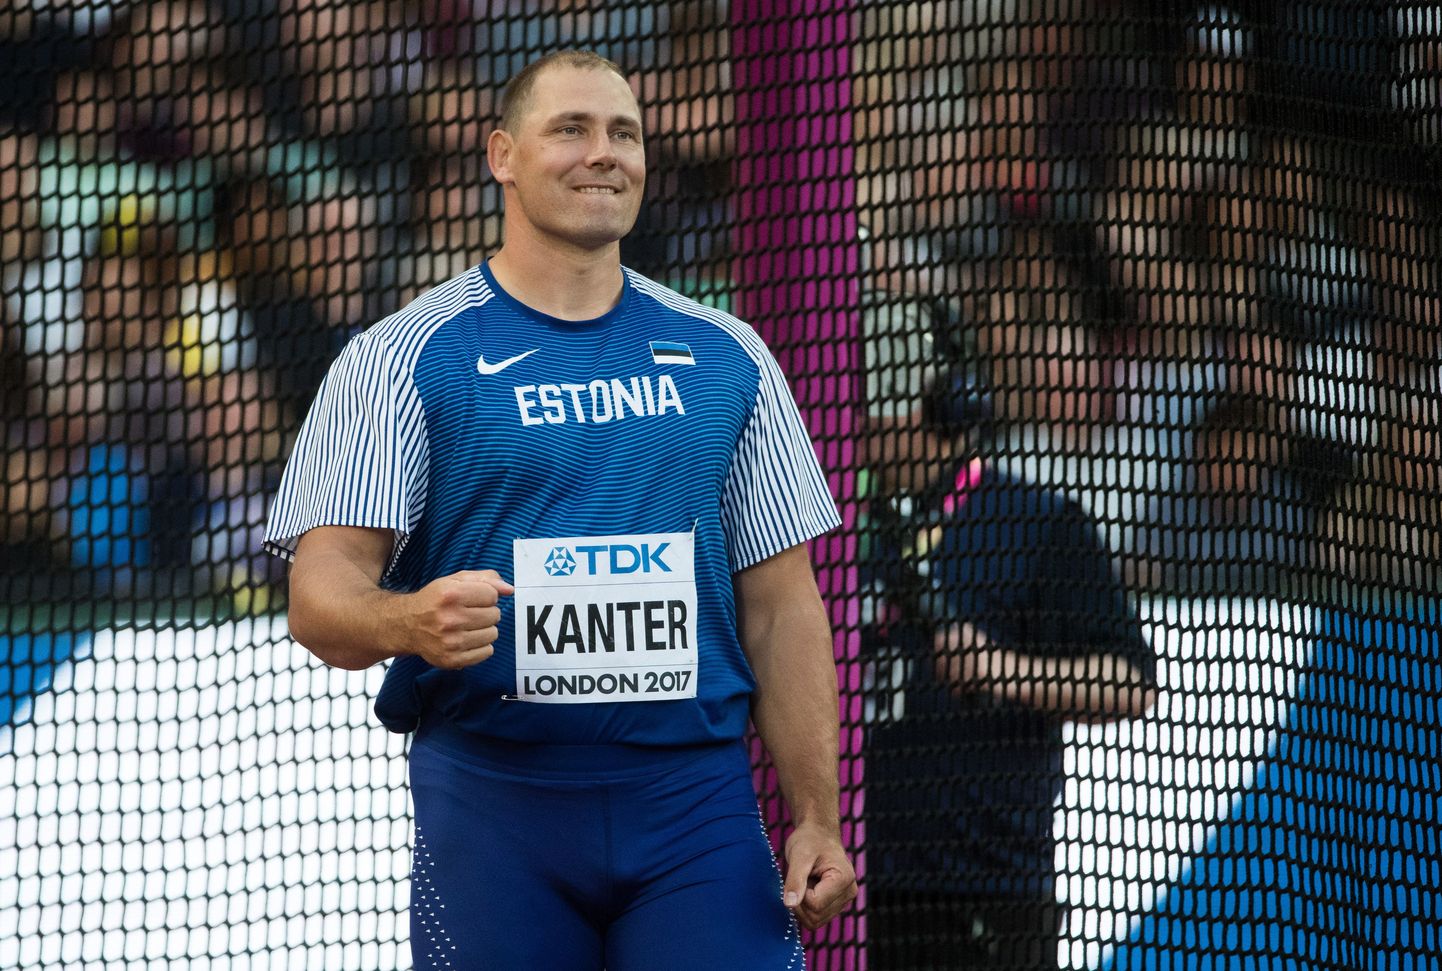 Gerd Kanter Londonis kergejõustiku maailmameistrivõistlustel.